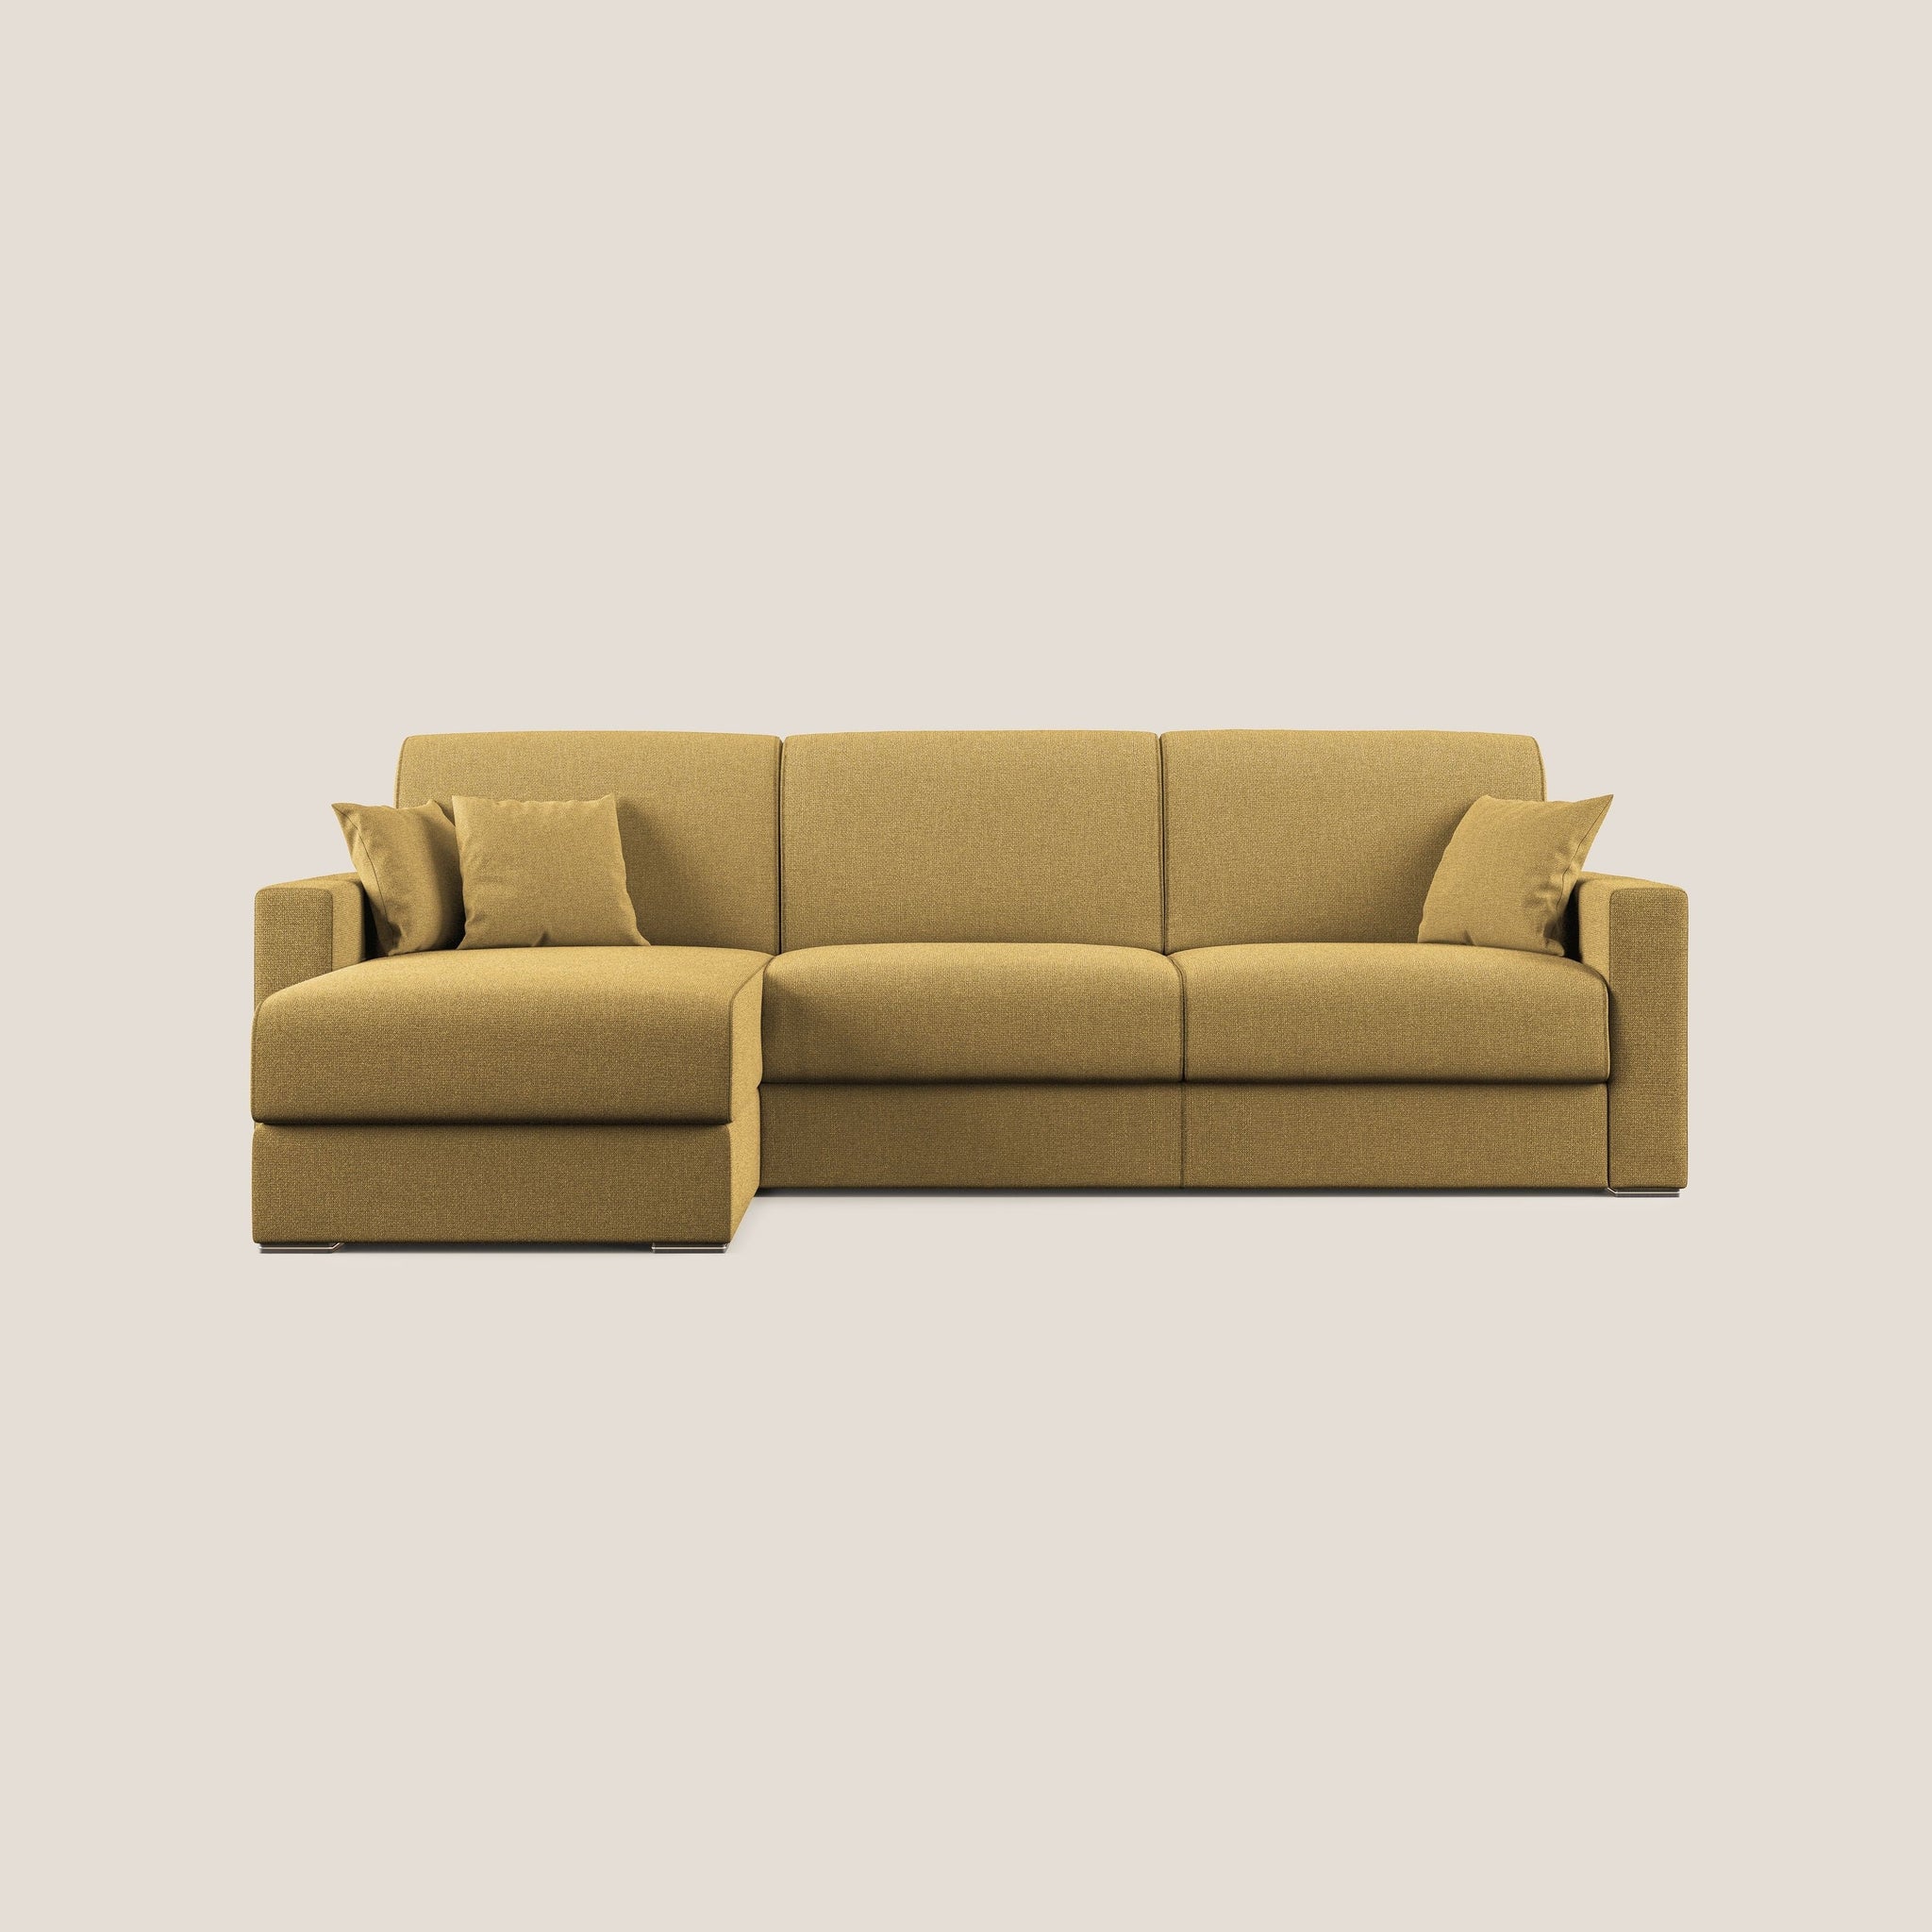 BEST Divano letto angolare con penisola in tessuto smacchiabile QuickClean - divano angolare, divano letto, via_enabled - Divani.Store